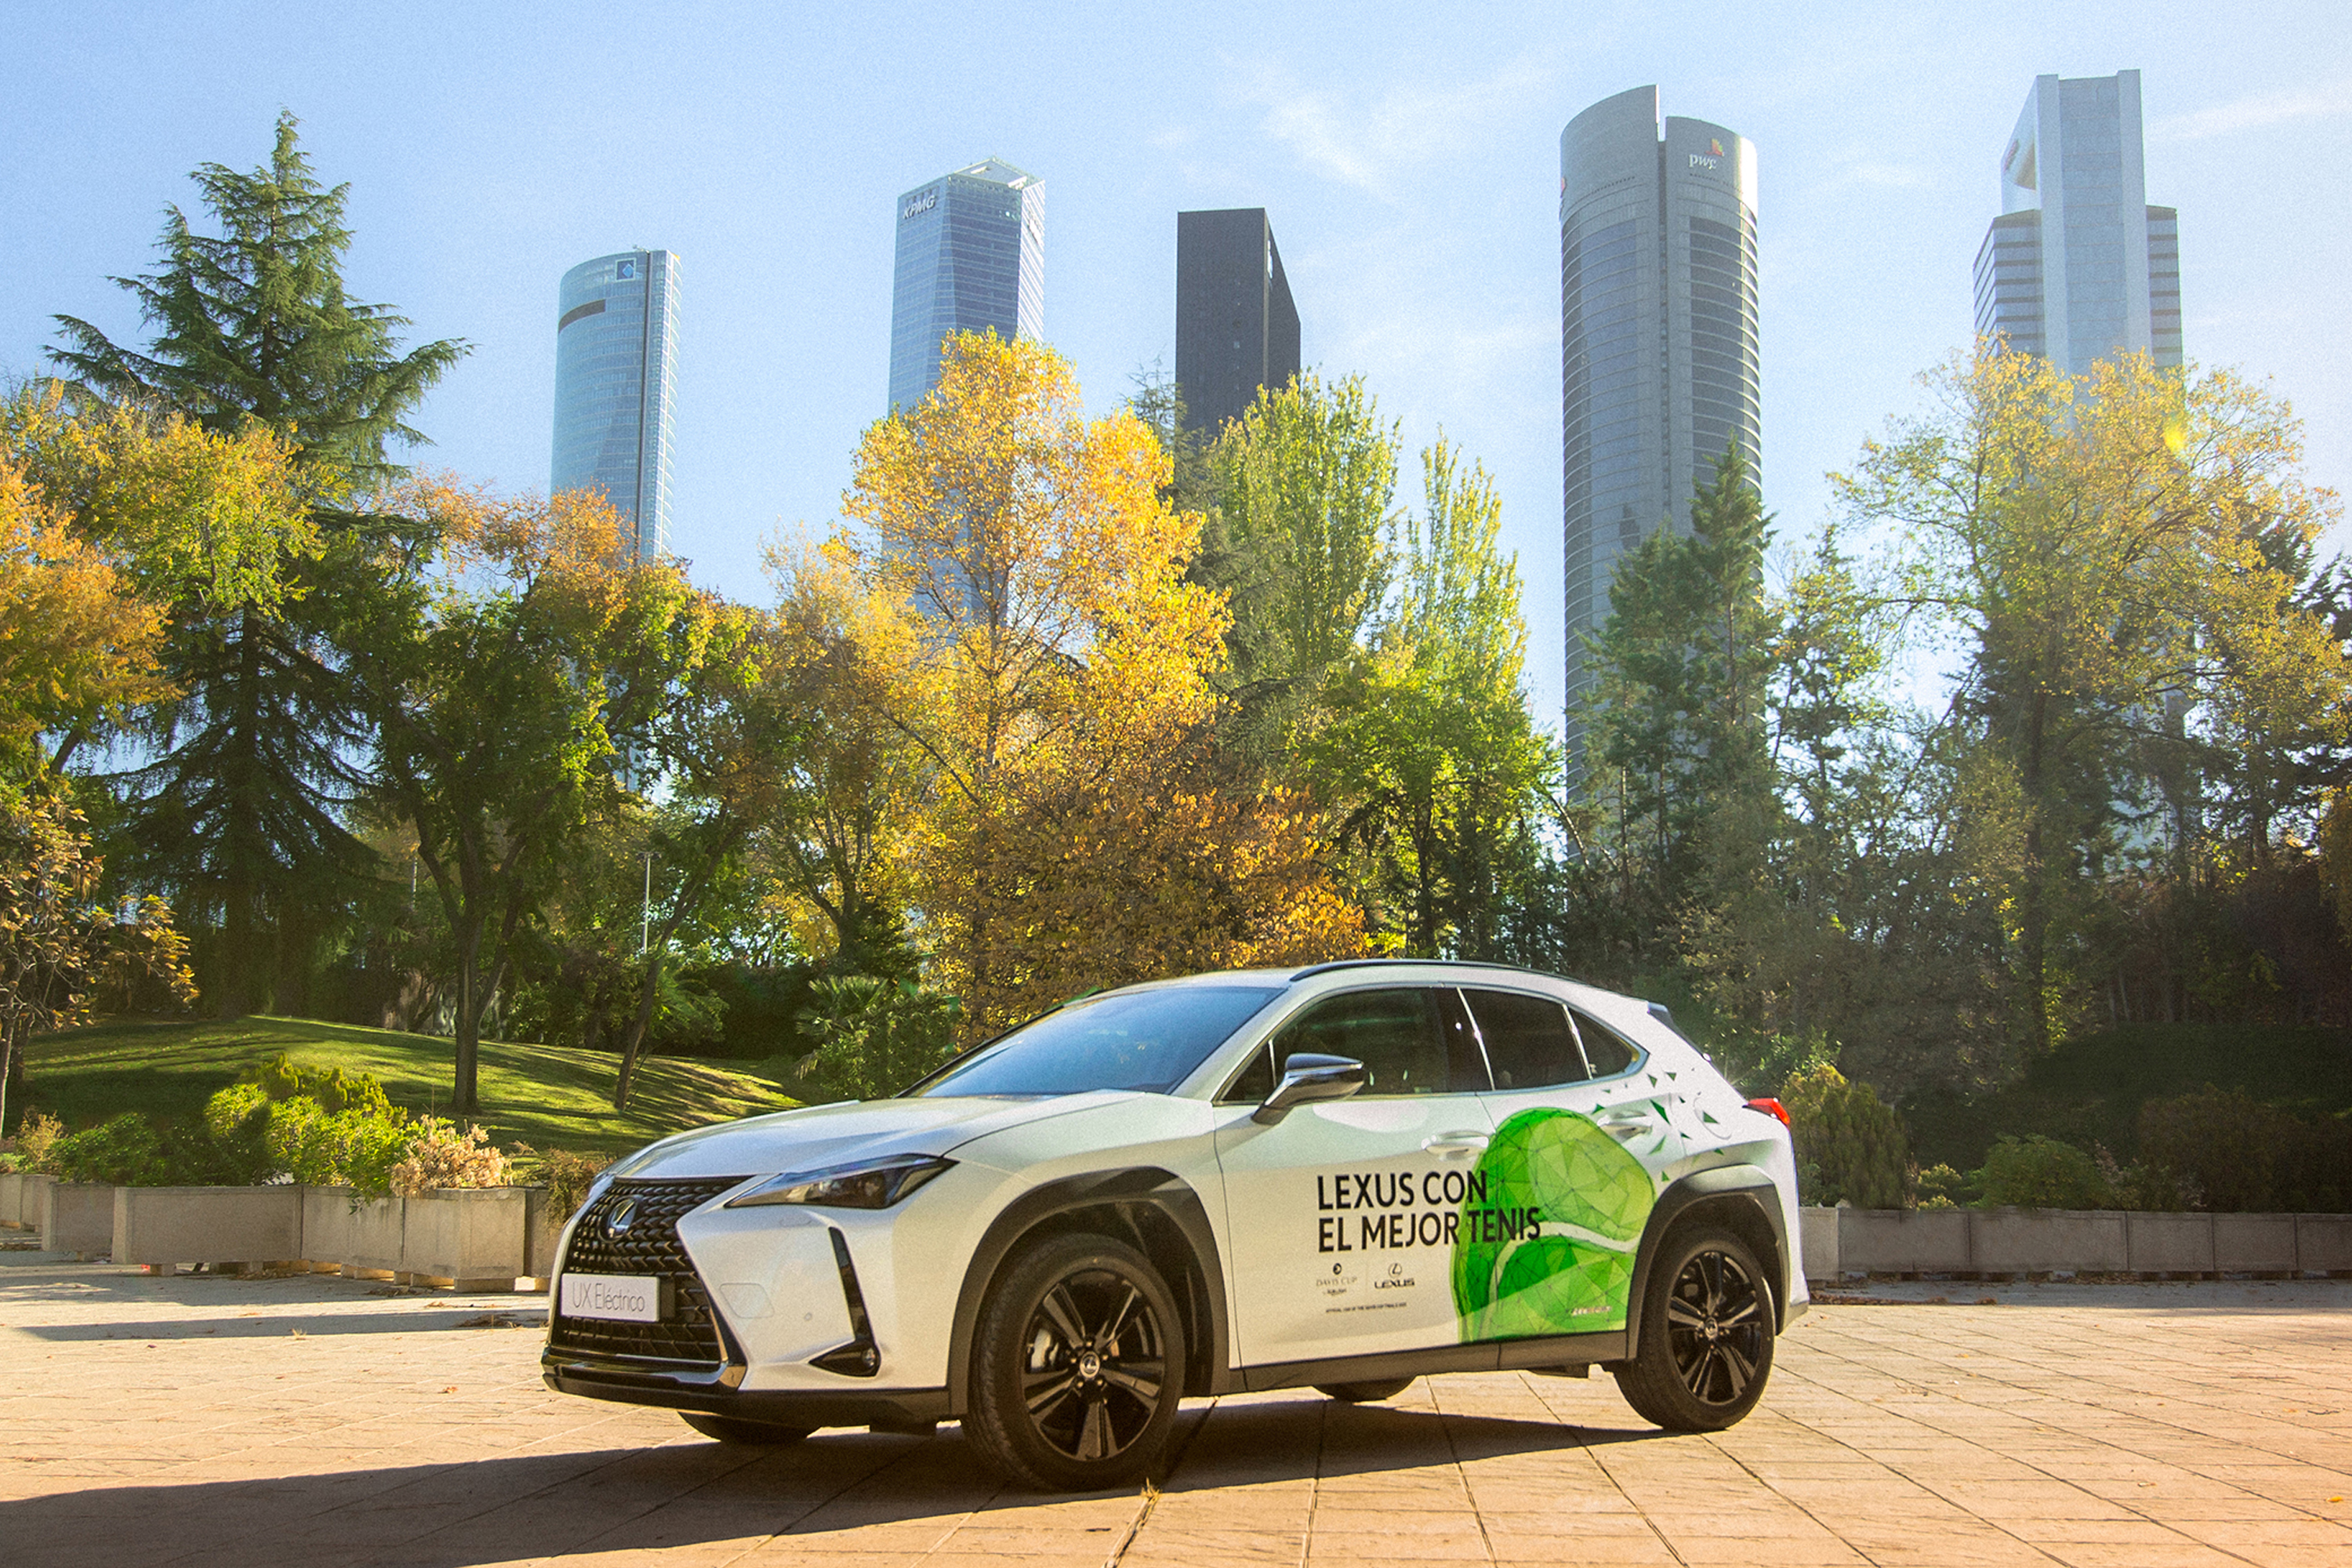 Galería: Lexus crea la “Caravana Lexus Electrified” para las Davis Cup by Rakuten Finals 2021